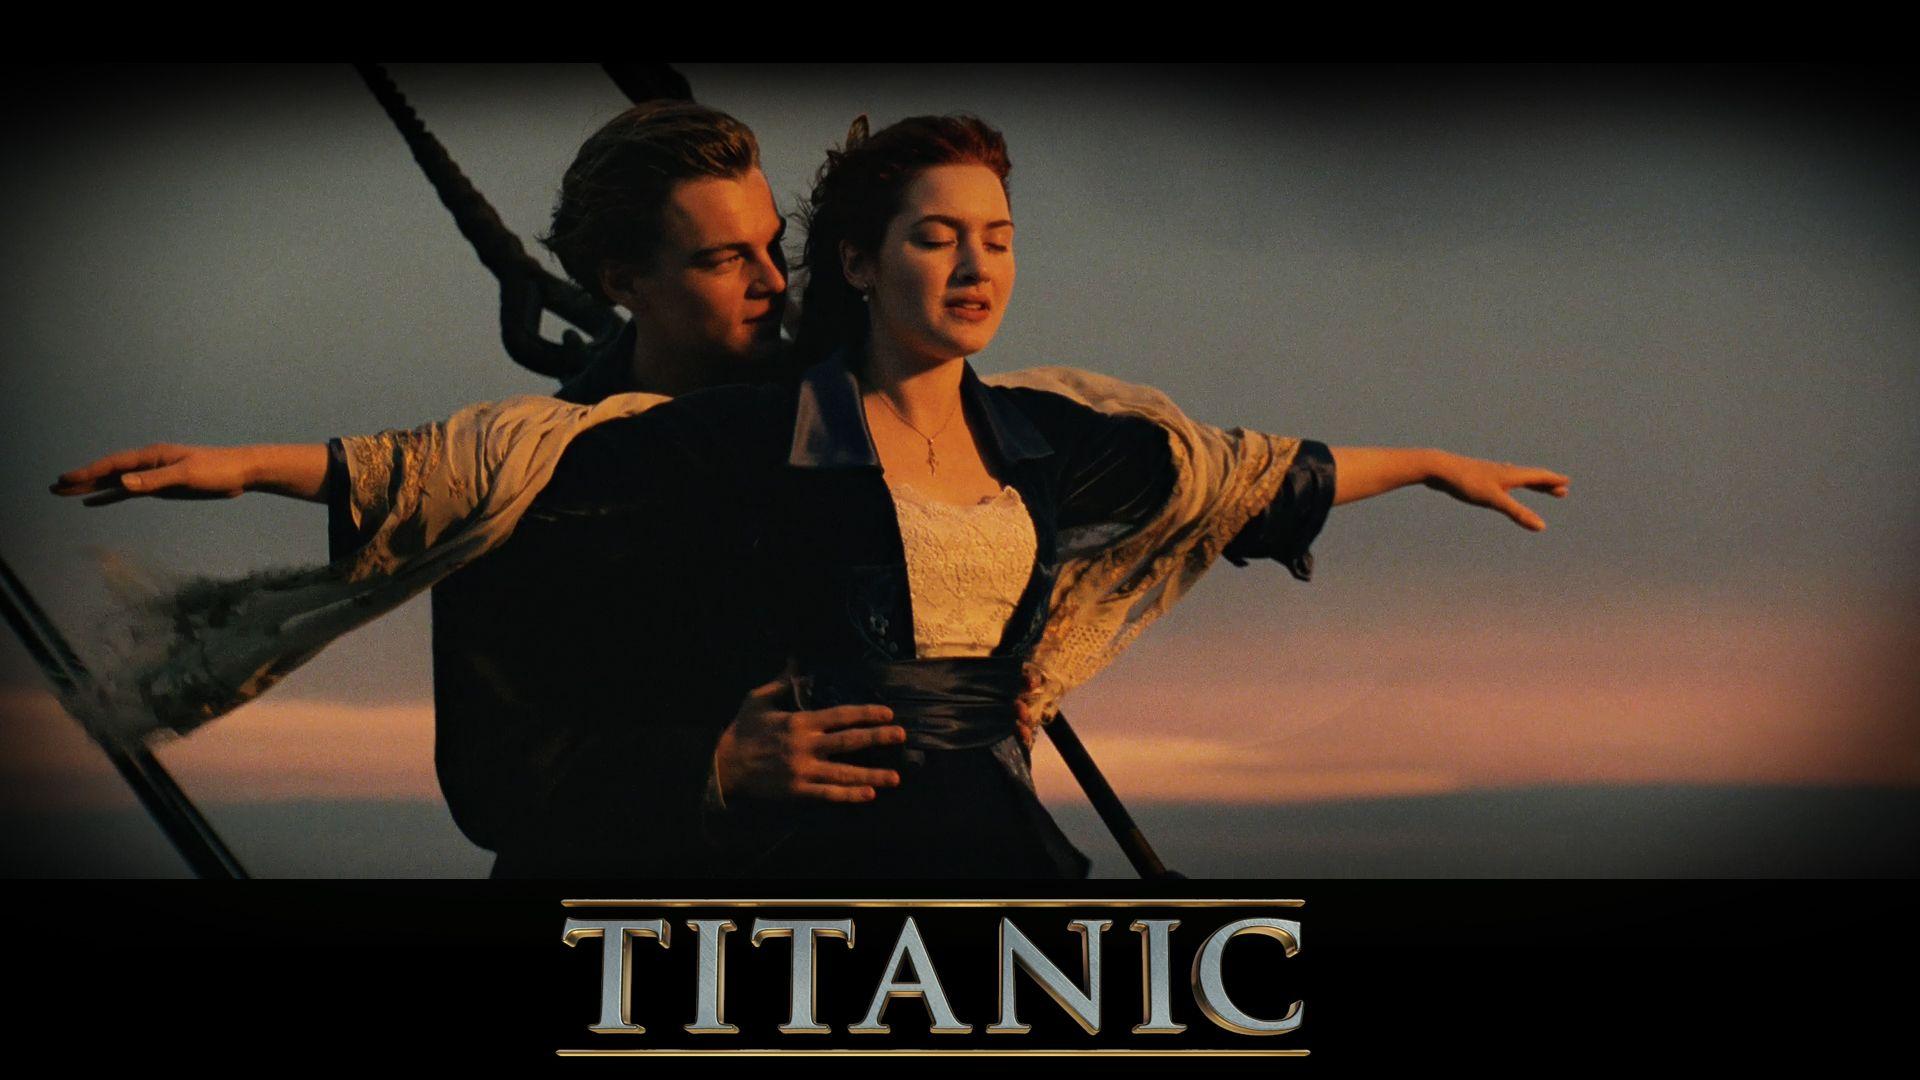 Titanic Movie HD Wallpaper Image & Picture